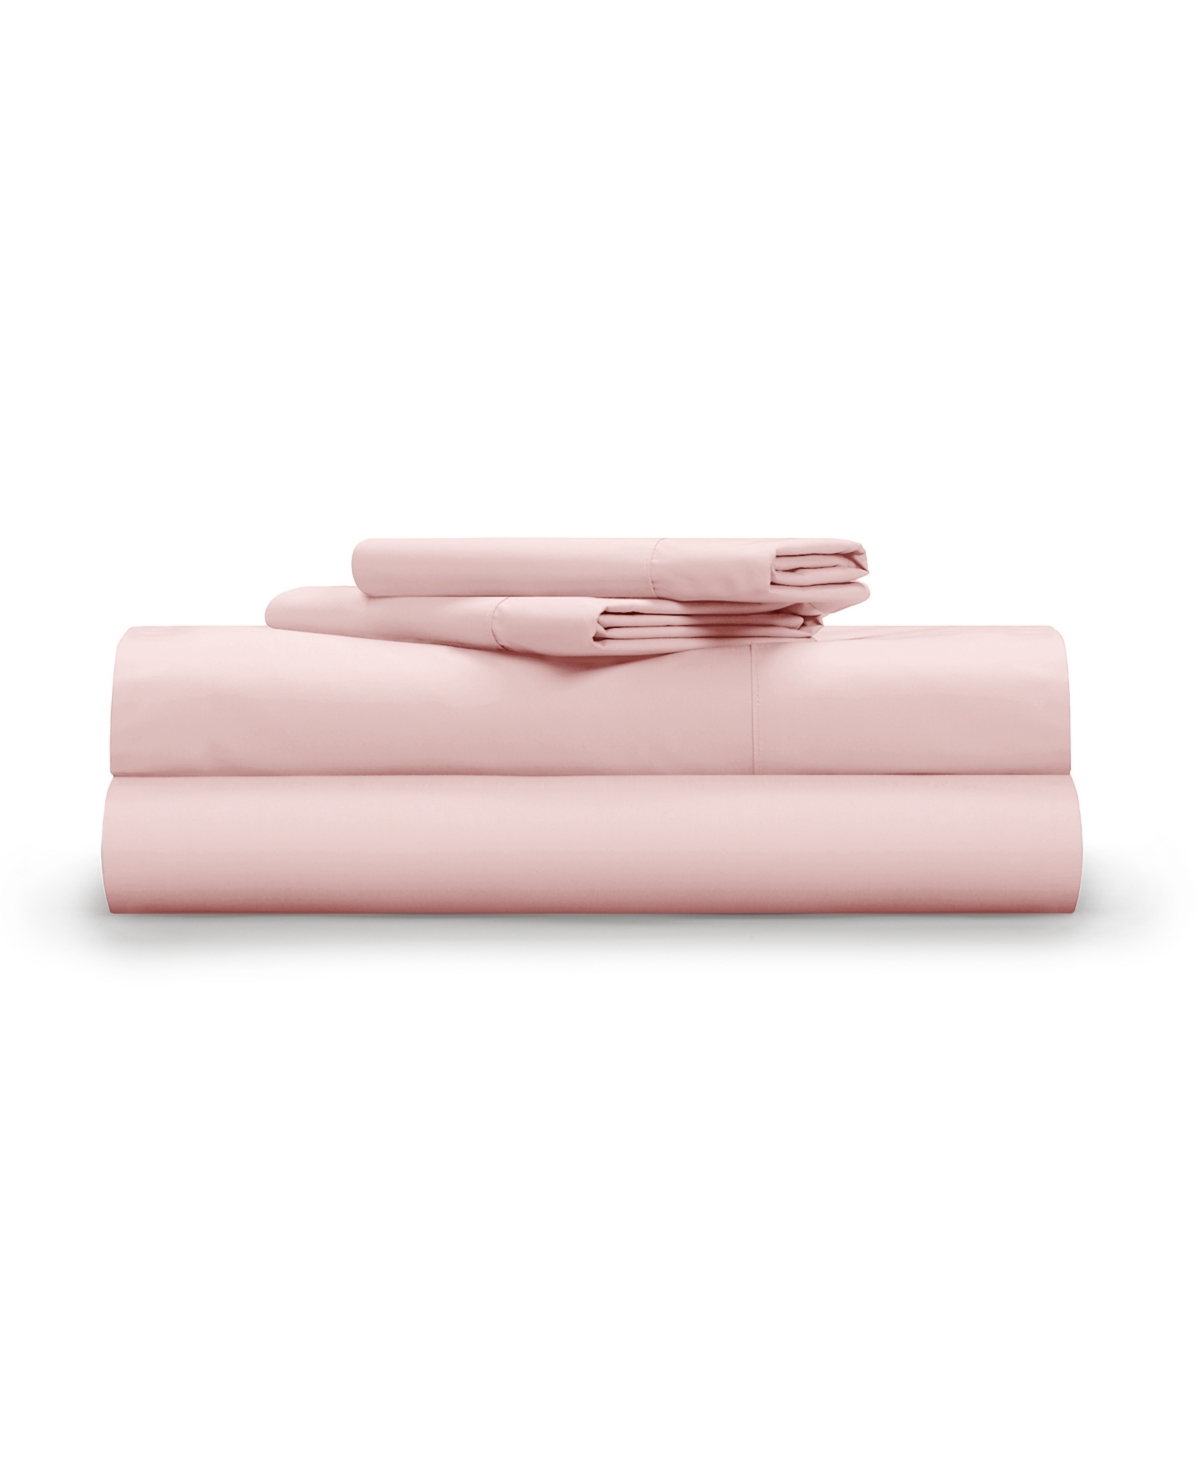 Pillow Gal Classic Cool And Crisp, 4 Piece Sheet Set, Queen In Light Pink